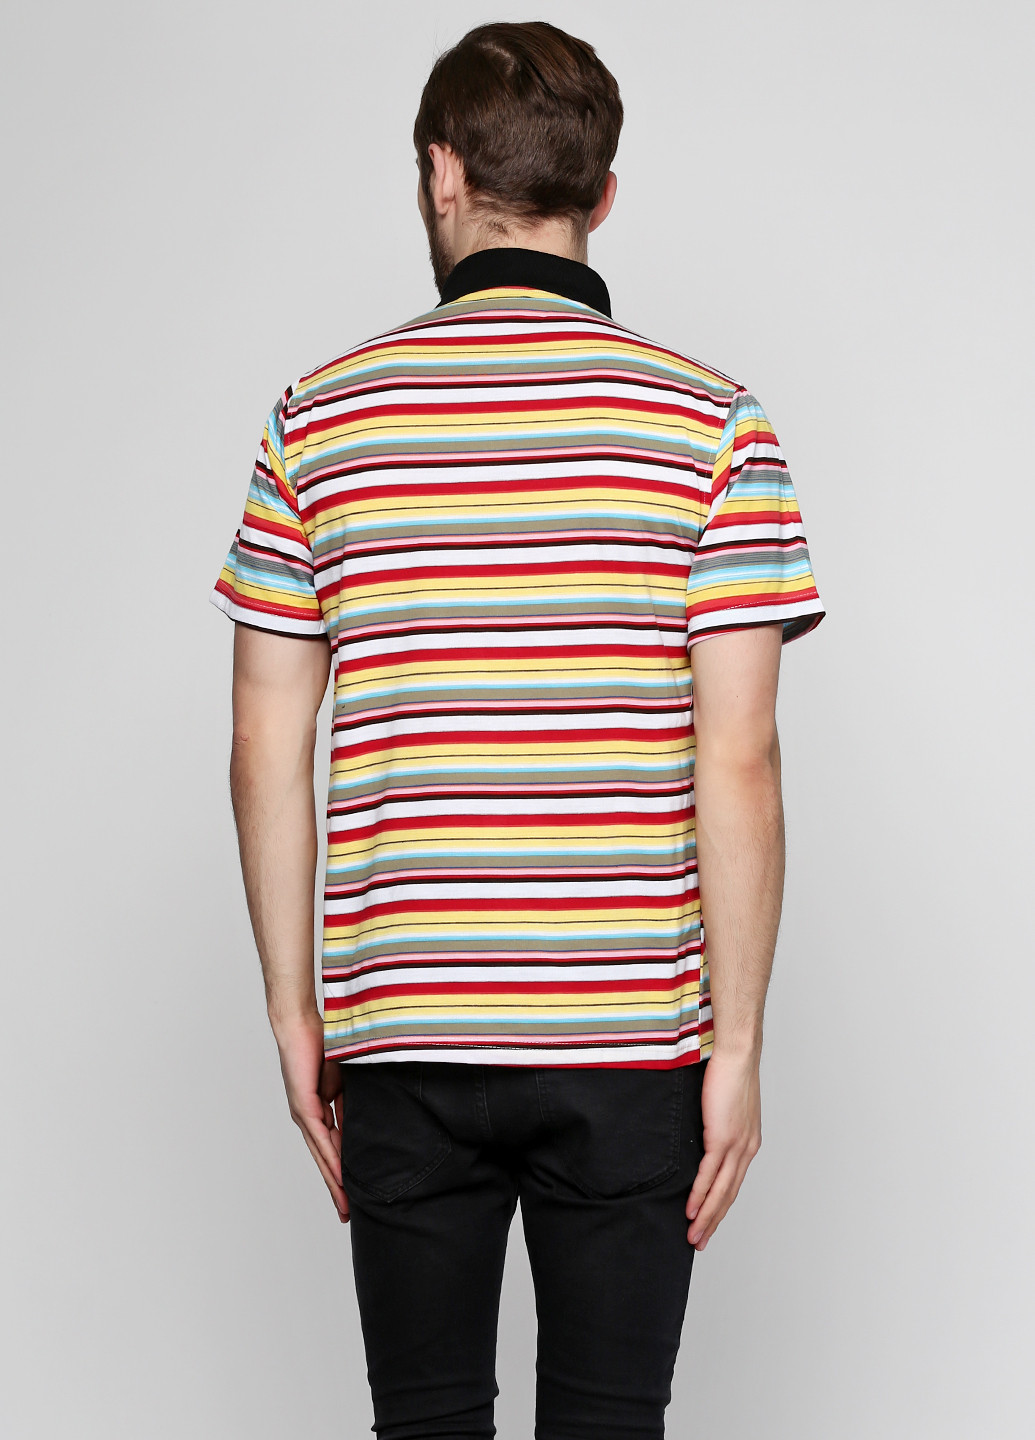 Цветная футболка-поло для мужчин Yehuangniao в полоску